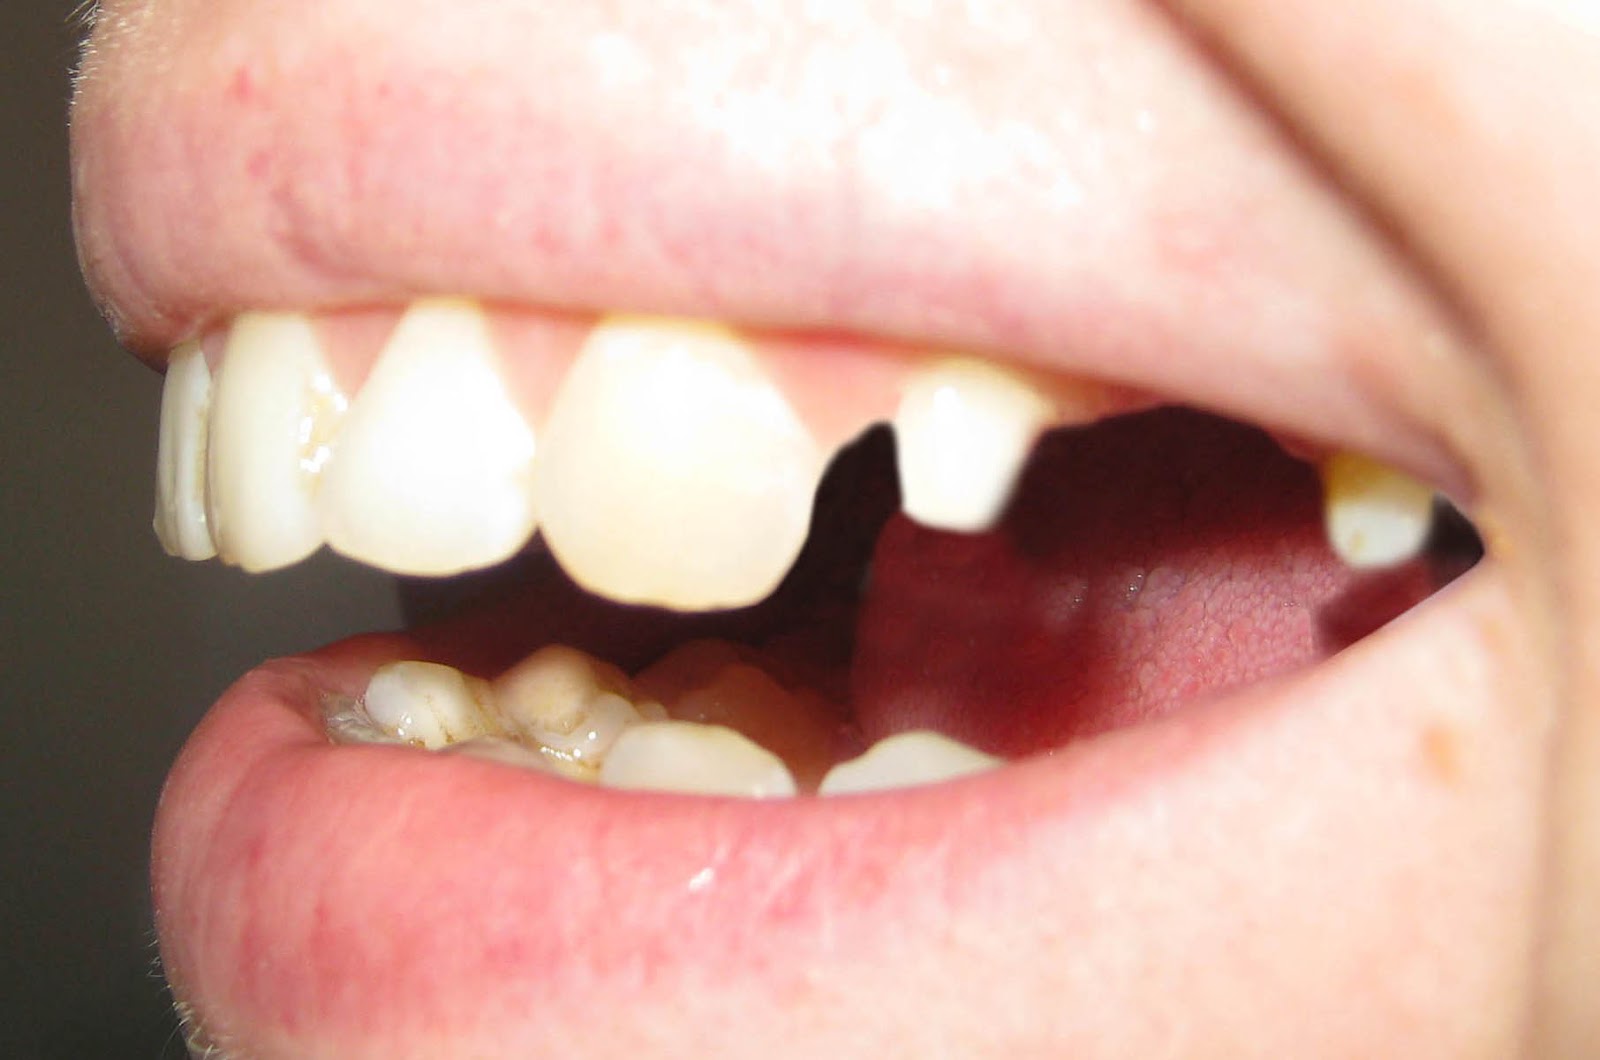 Фото: для установки металлокерамических коронок стачивают зубы